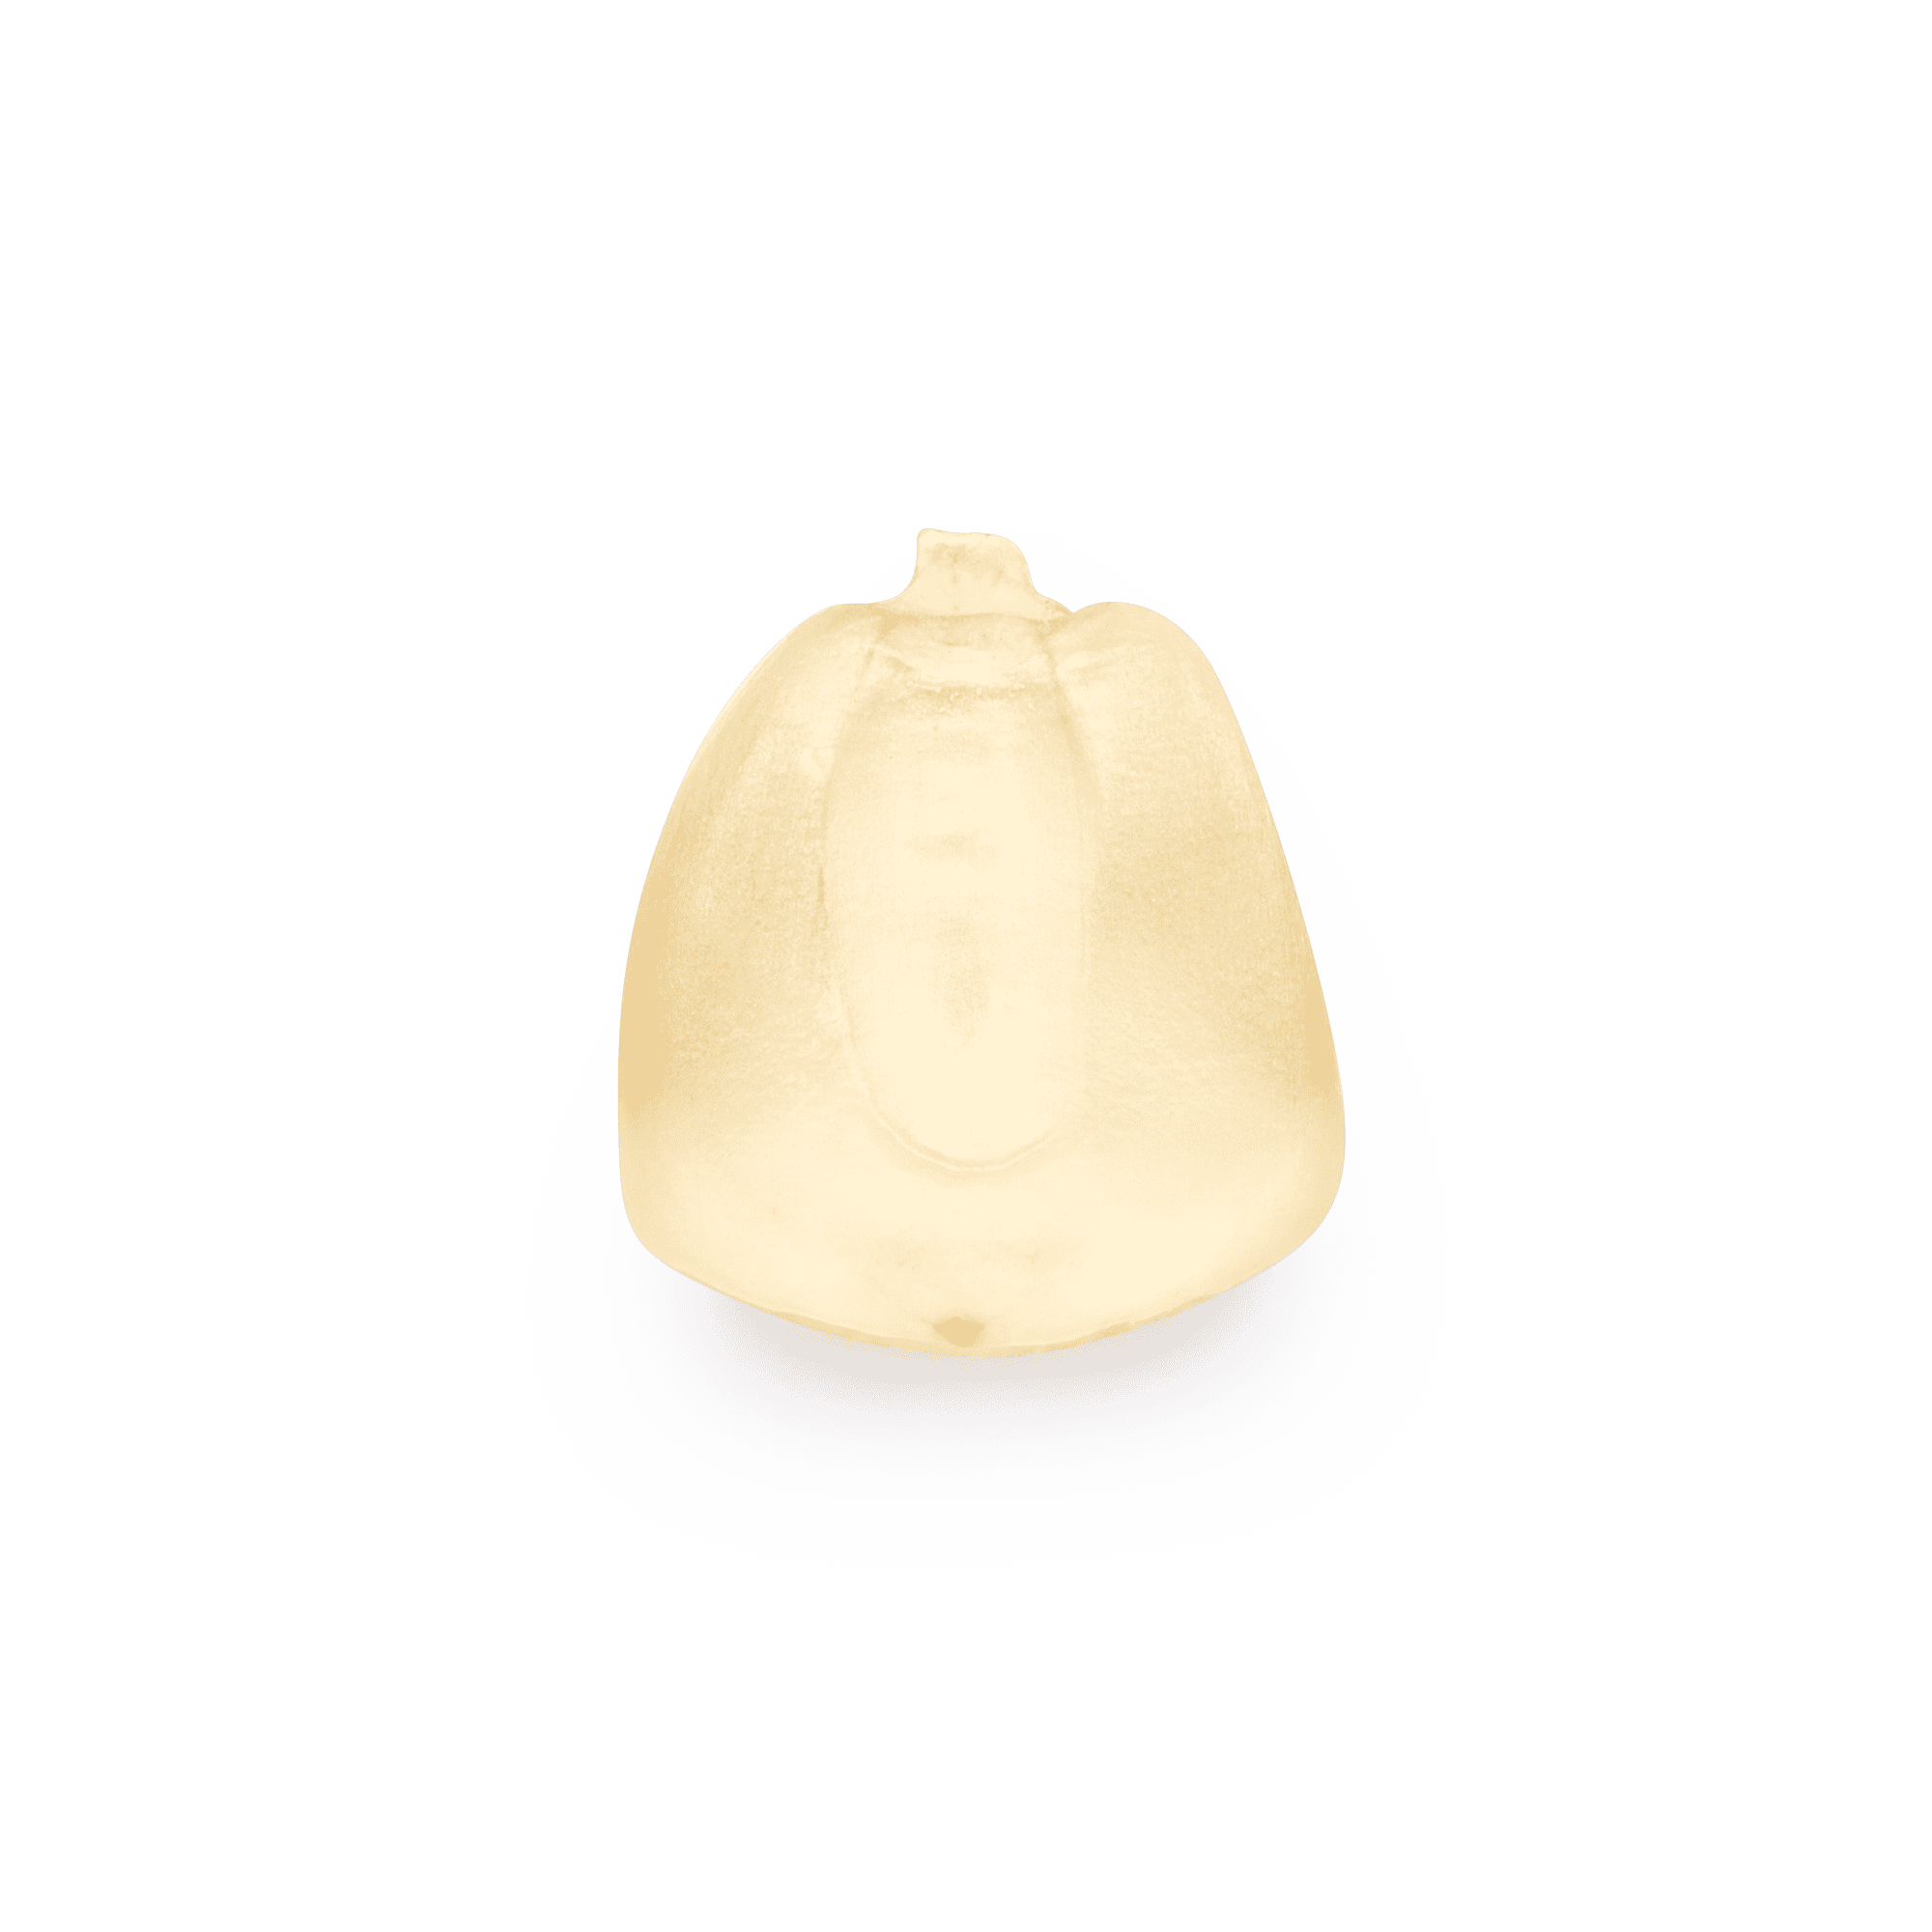 Heirloom Corn | Masienda White Olotillo Blanco from Mexico | #1 of #4